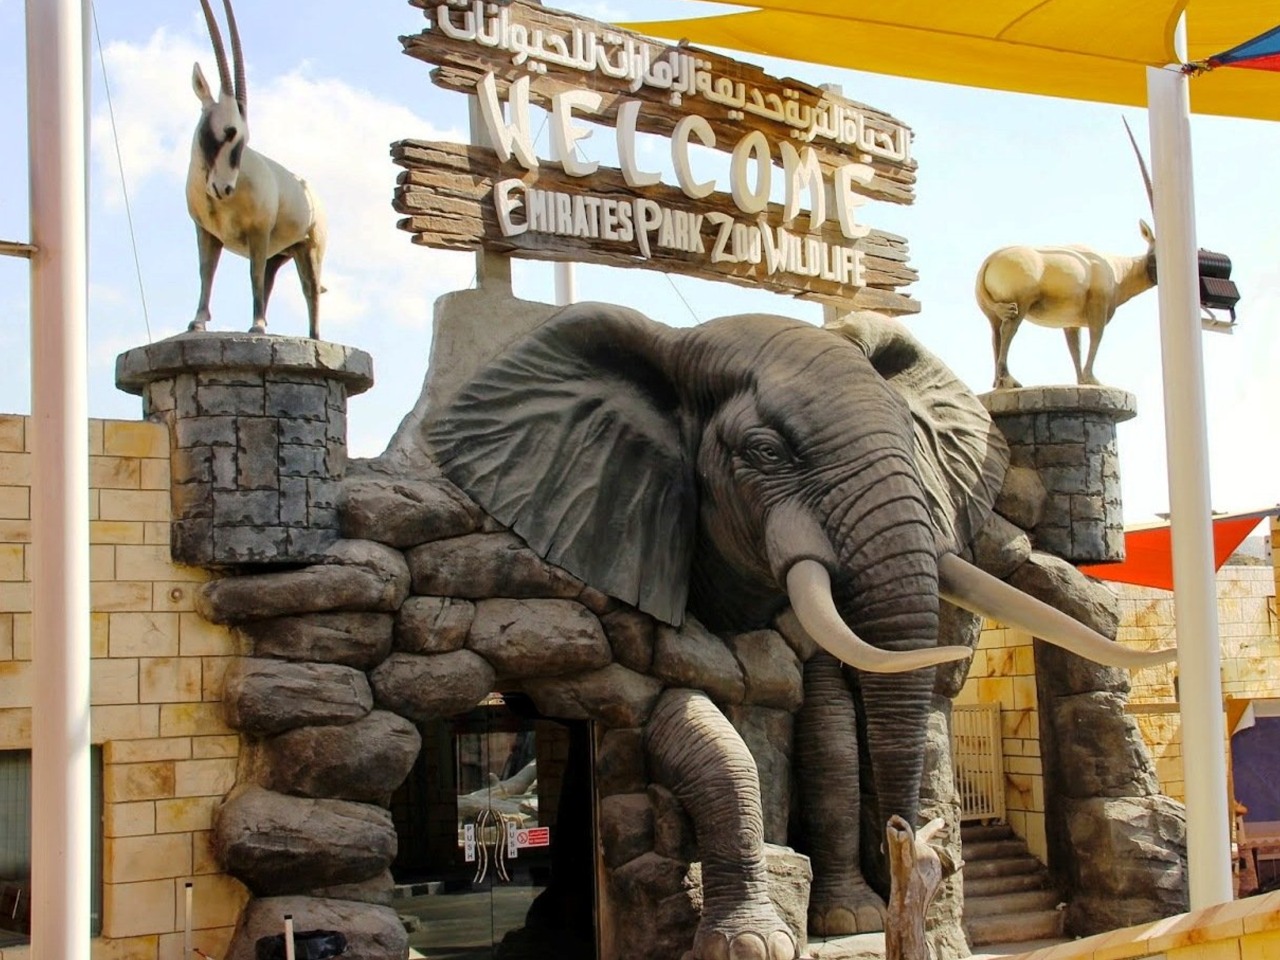 Едем в столицу: зоопарк Emirates Park в Абу-Даби | Цена 300$, отзывы, описание экскурсии